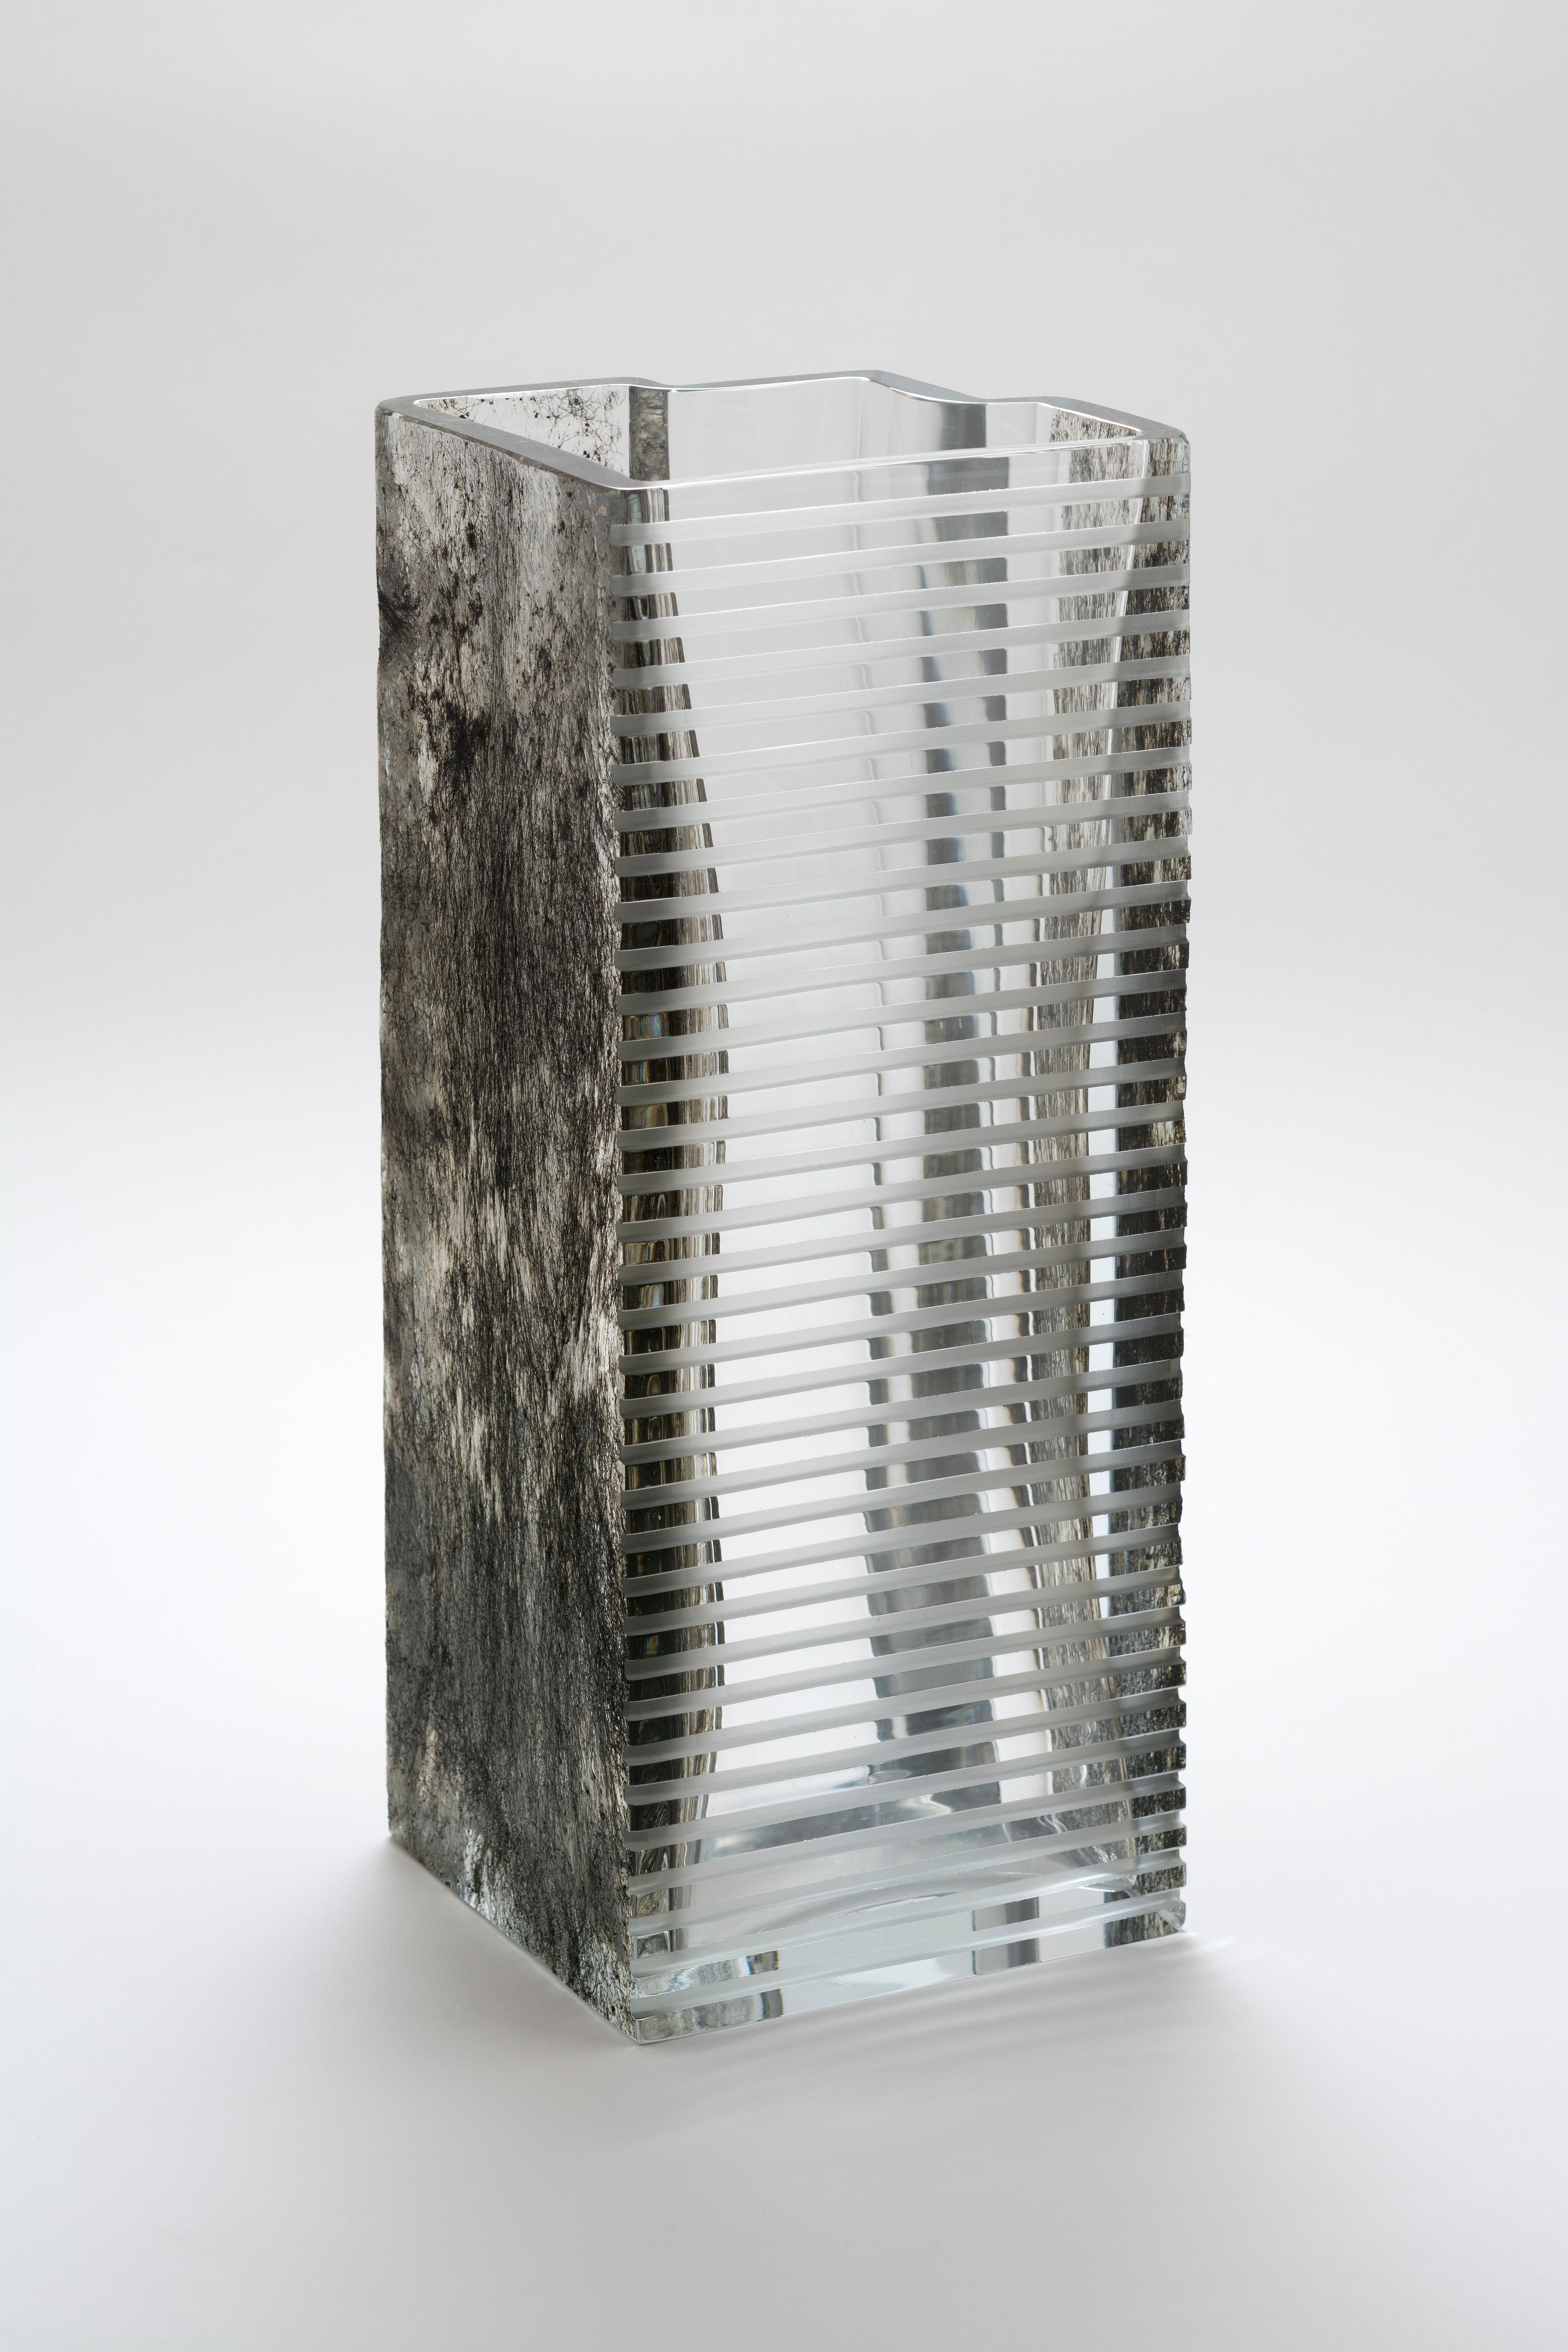 Vase Beyond the Dark Forest von Paolo Marcolongo
Abmessungen: 42 x 16,3 x H 17 cm 
MATERIALIEN: Murano-Glas und Eisen. 


Paolo Marcolongo wurde 1956 in Padua geboren, er besuchte das Kunstgymnasium 